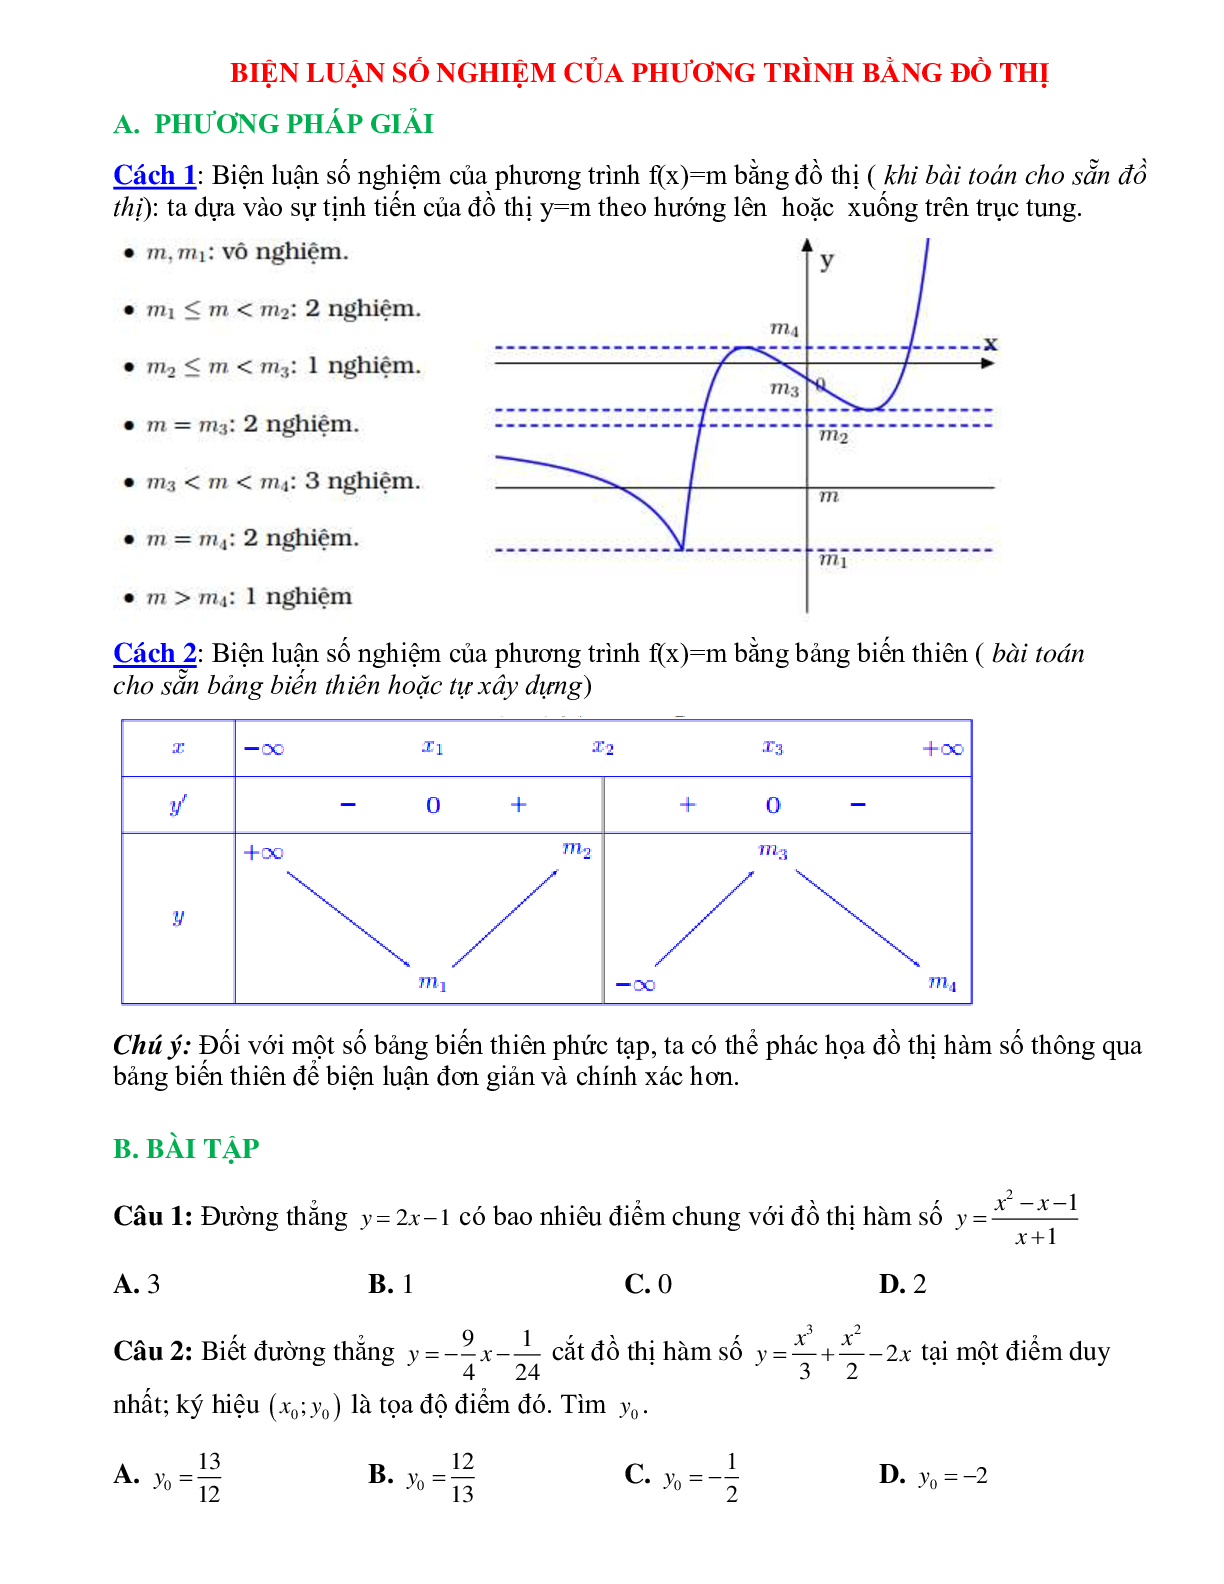 Biến luận số nghiệm của phương trình bằng đồ thị (trang 1)